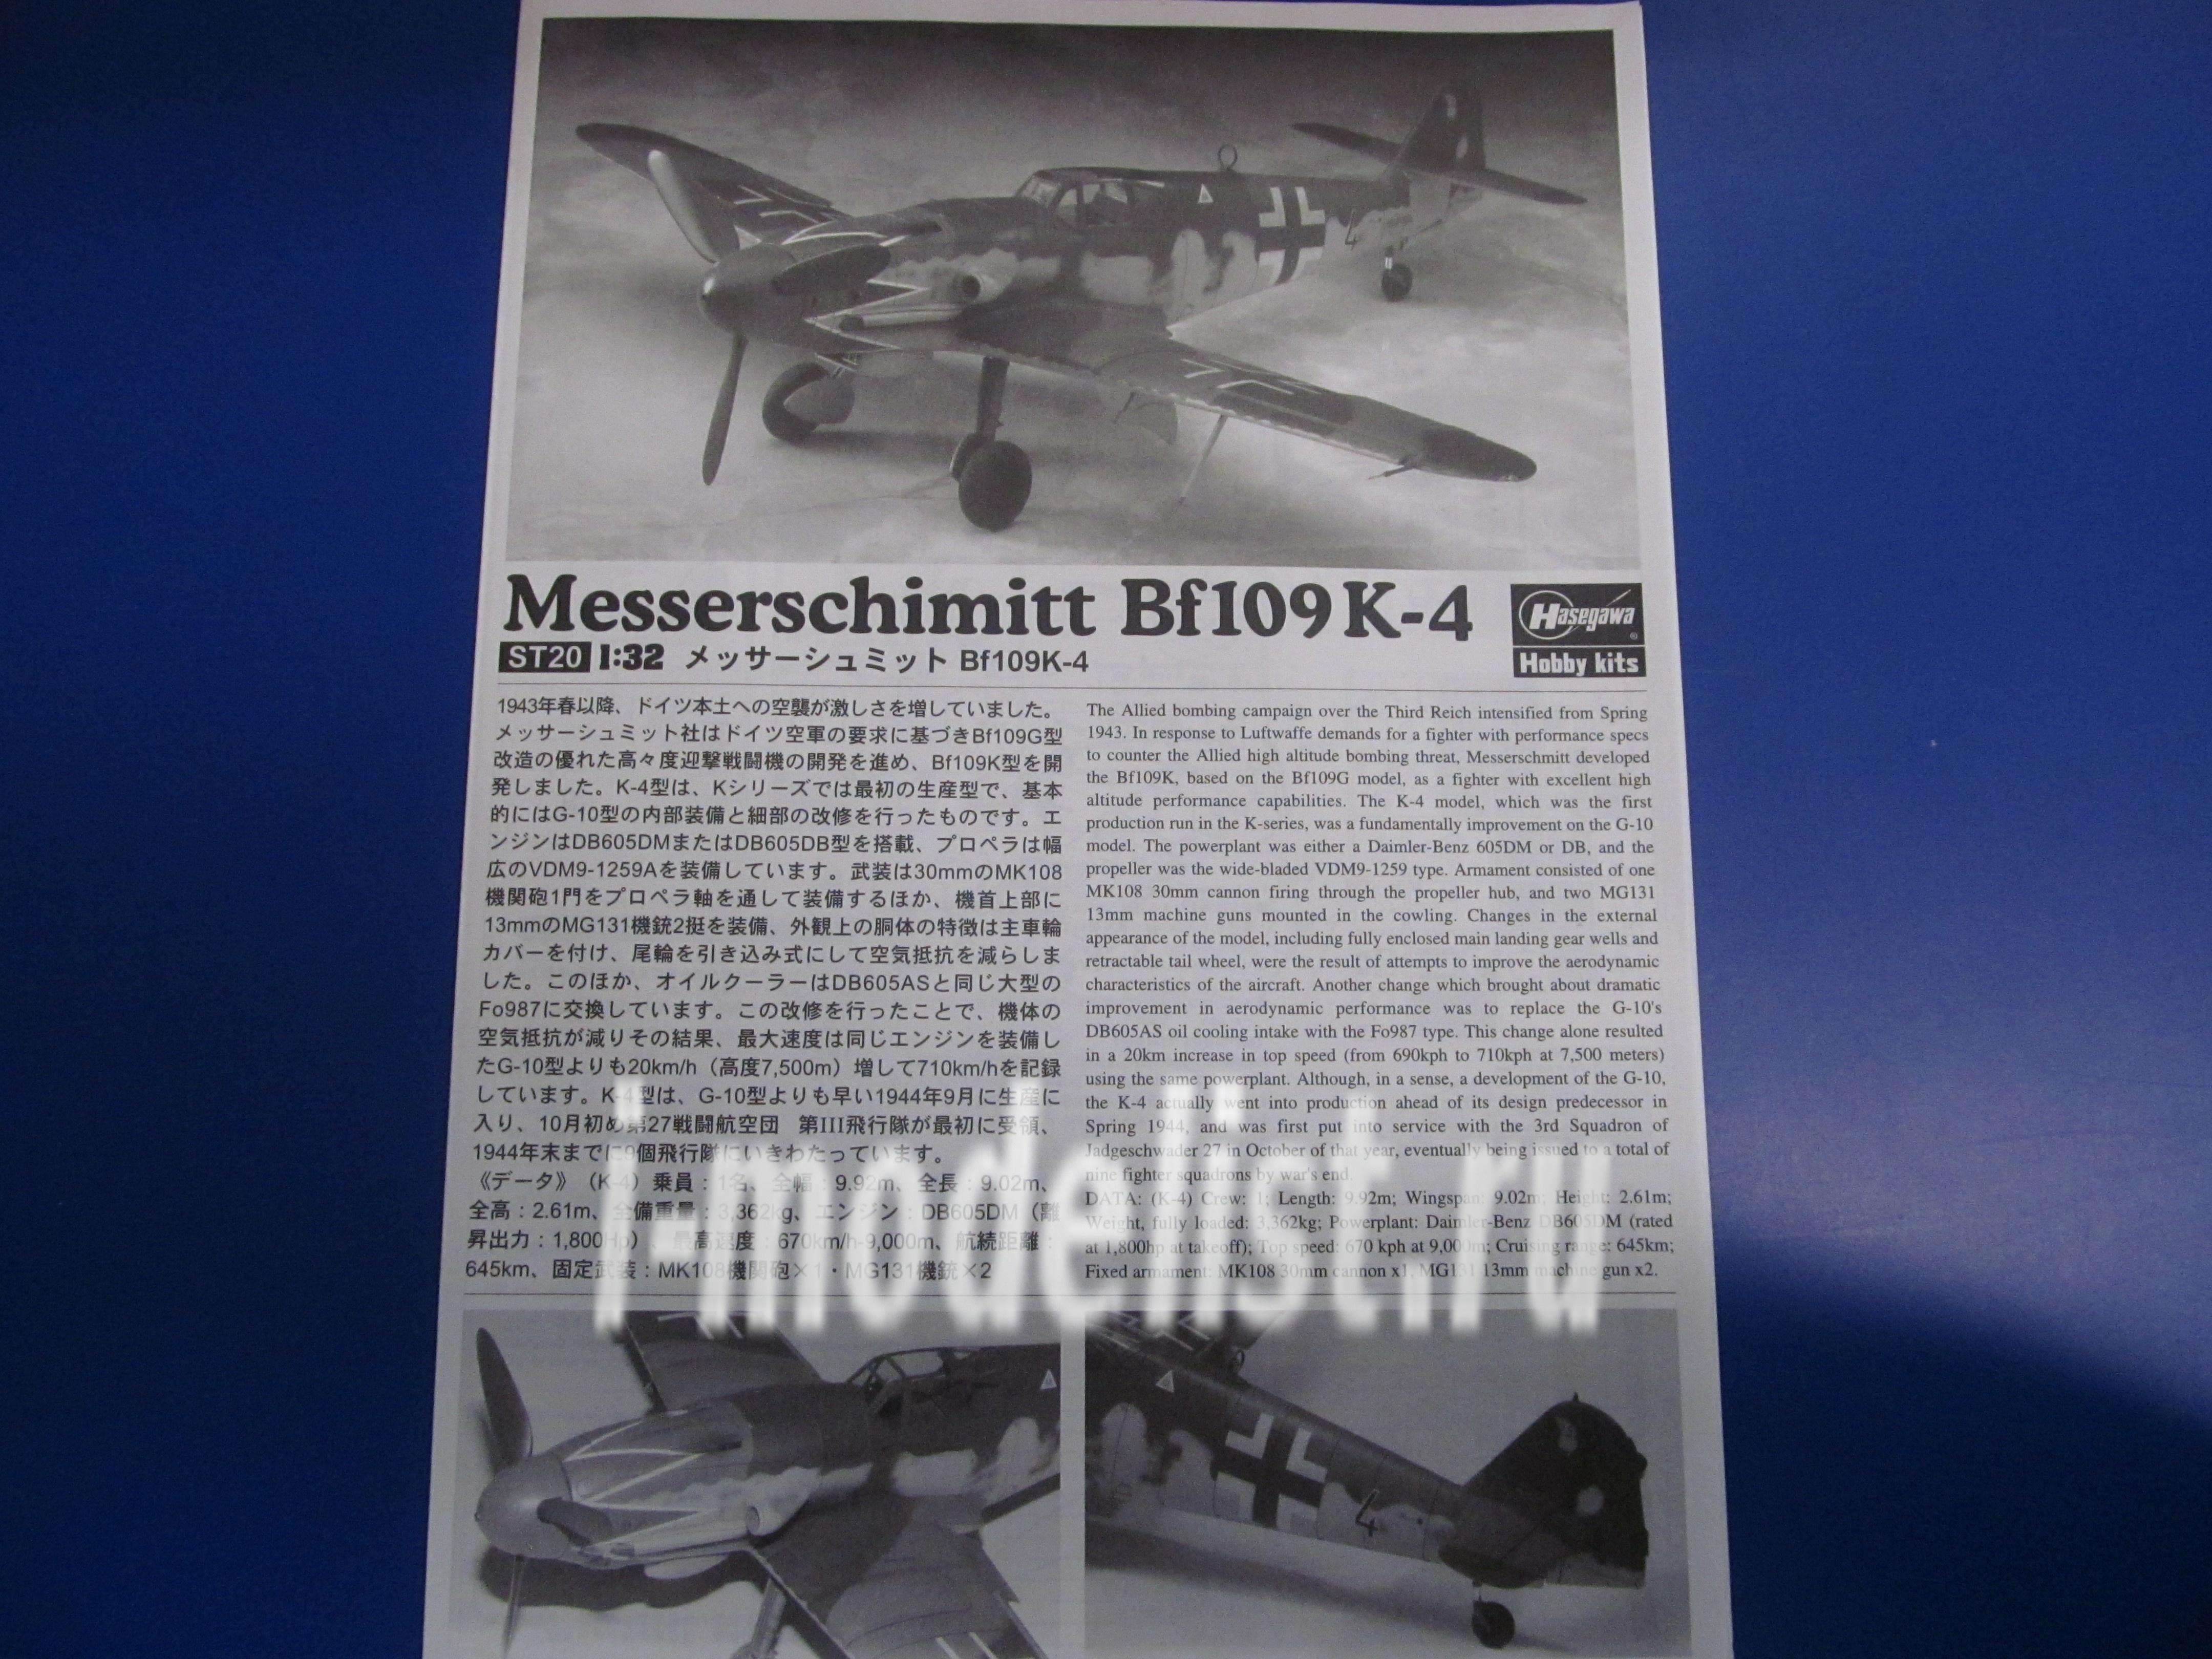 08070 Hasegawa 1/32 Messerschmitt Bf109K-4 Aircraft